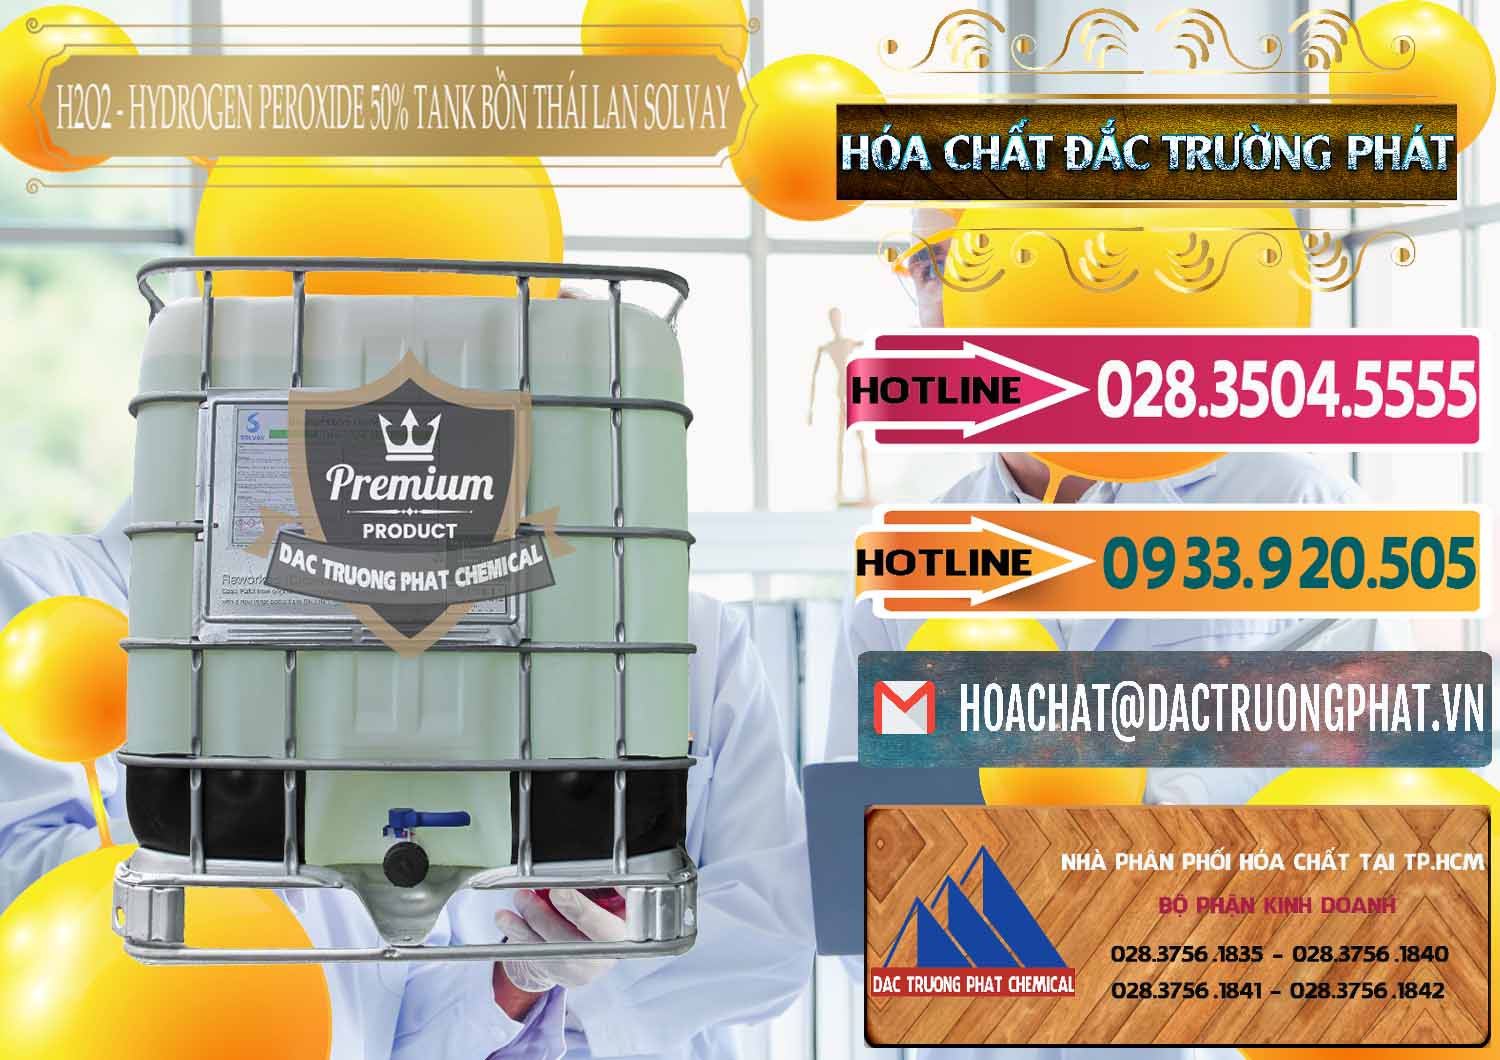 Công ty kinh doanh và bán H2O2 - Hydrogen Peroxide 50% Tank IBC Bồn Thái Lan Solvay - 0072 - Nơi bán - cung cấp hóa chất tại TP.HCM - dactruongphat.vn